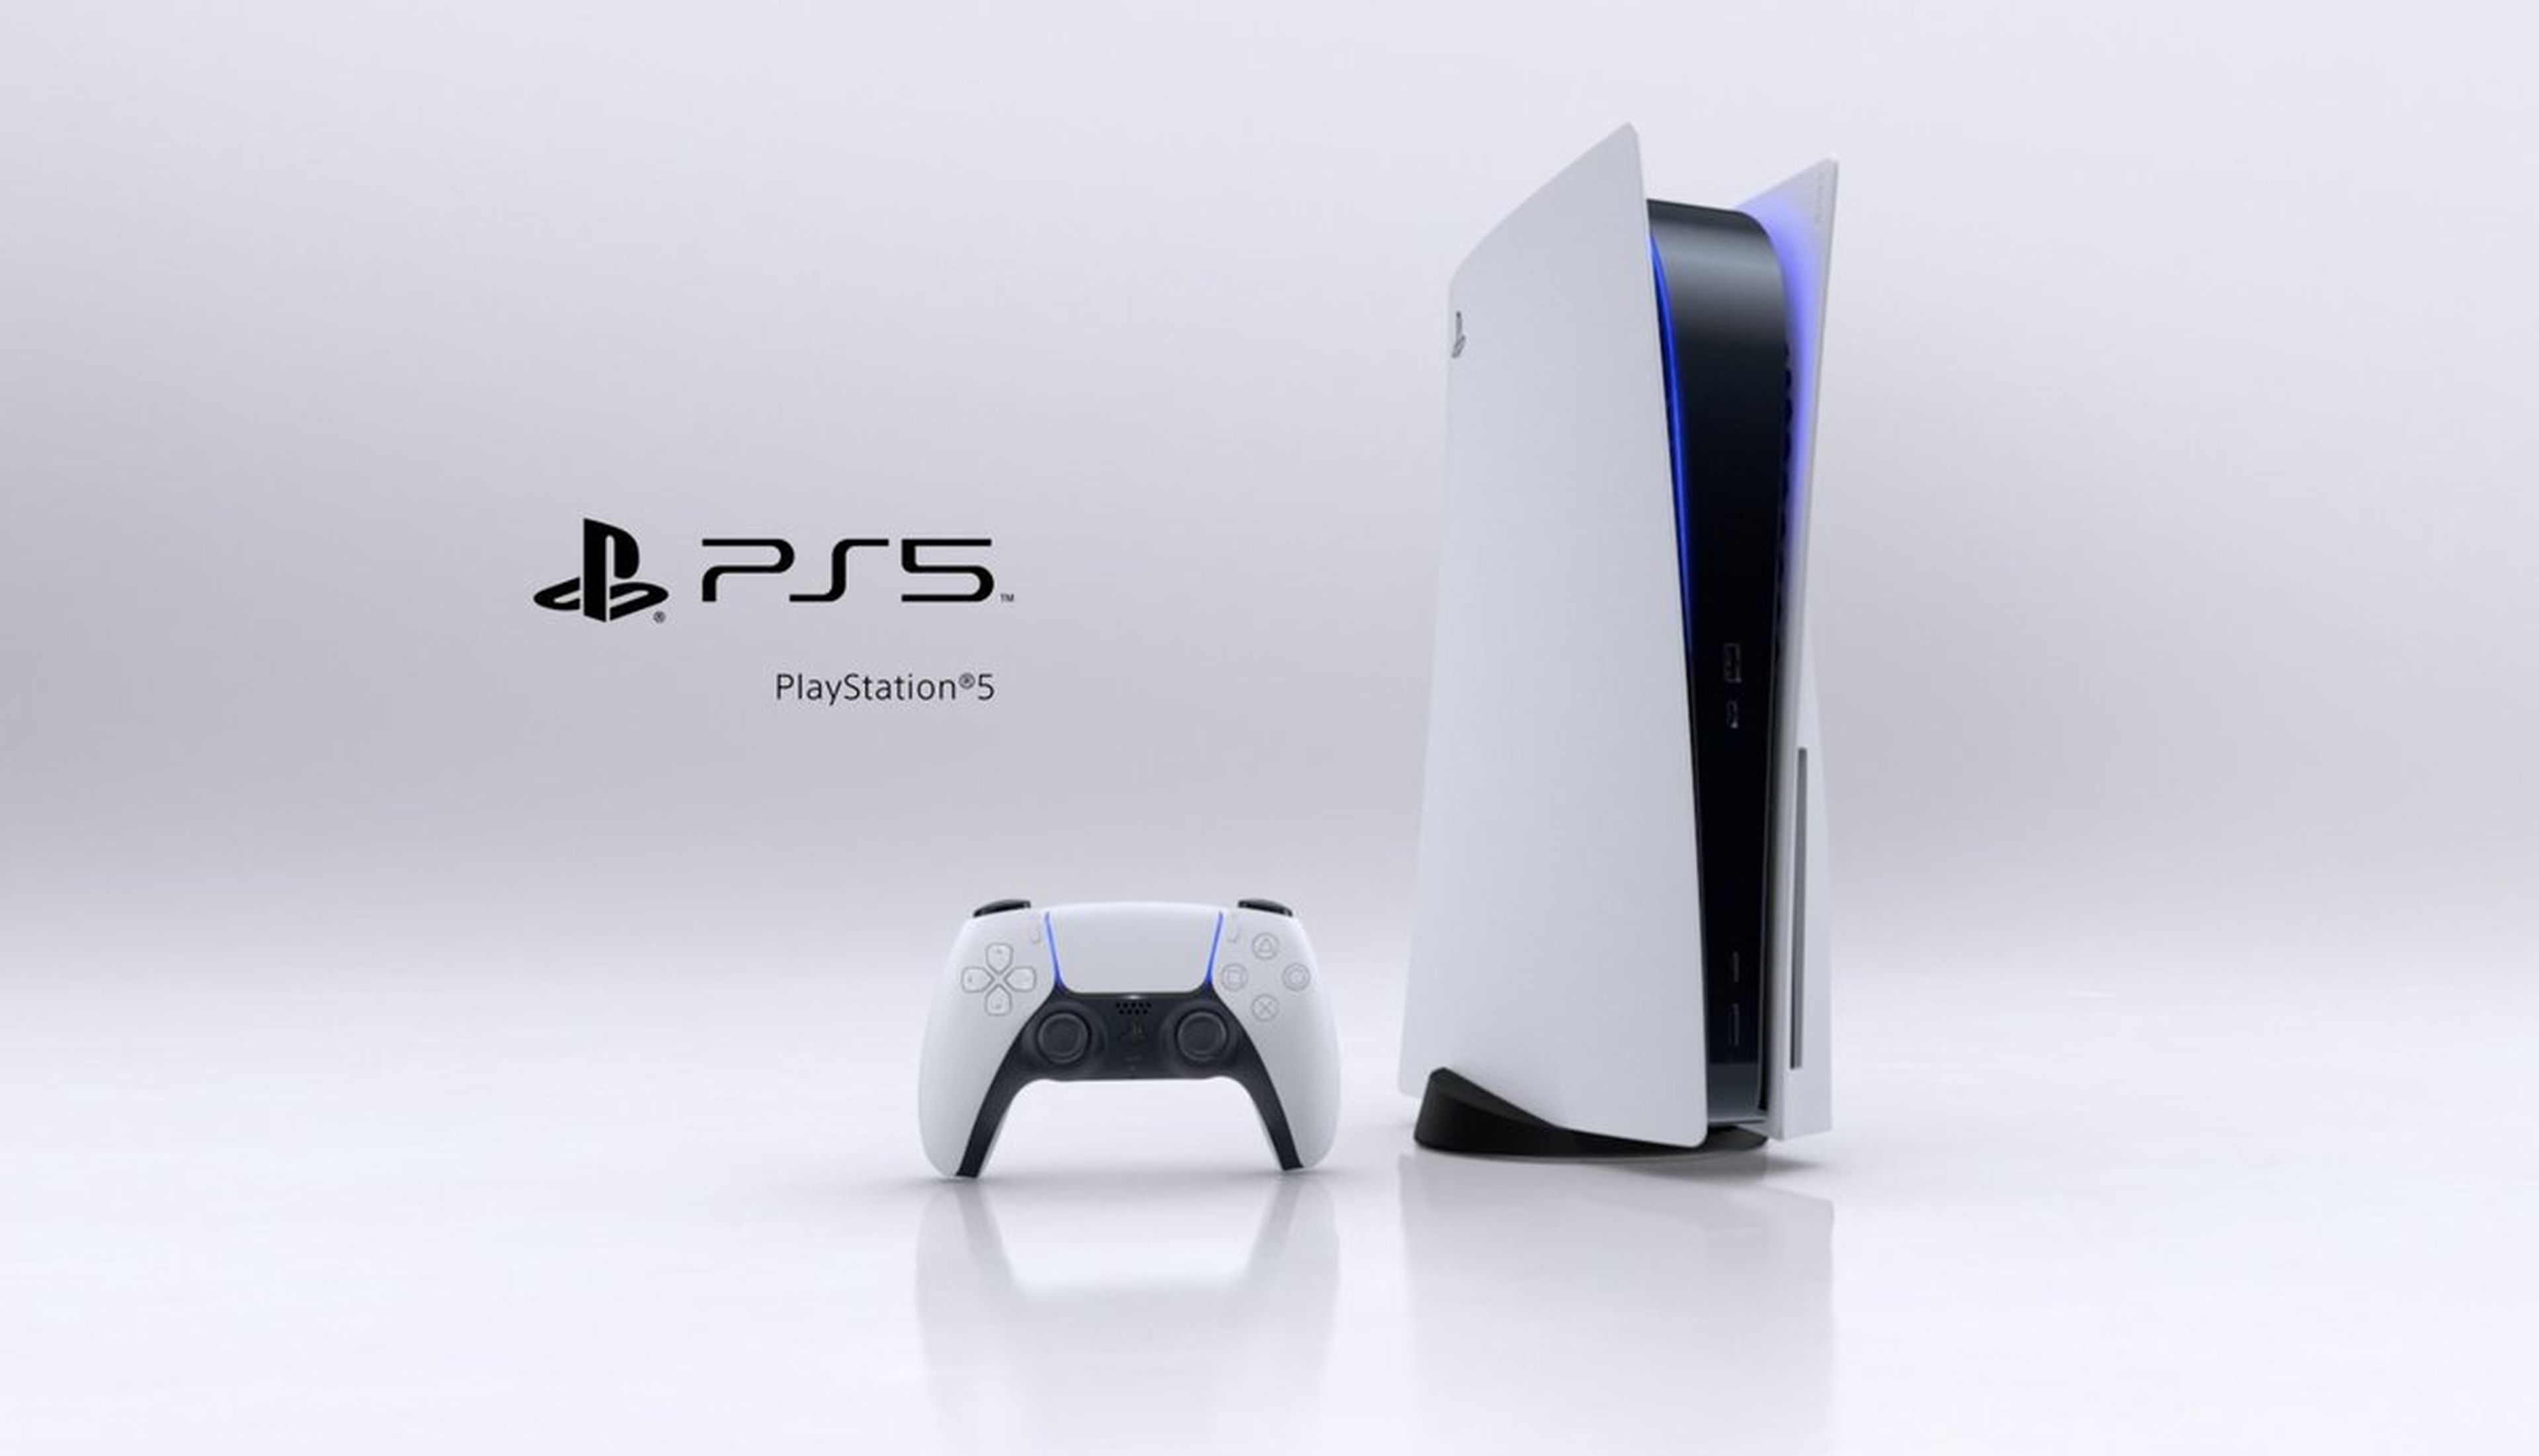 PlayStation 5 / PS5